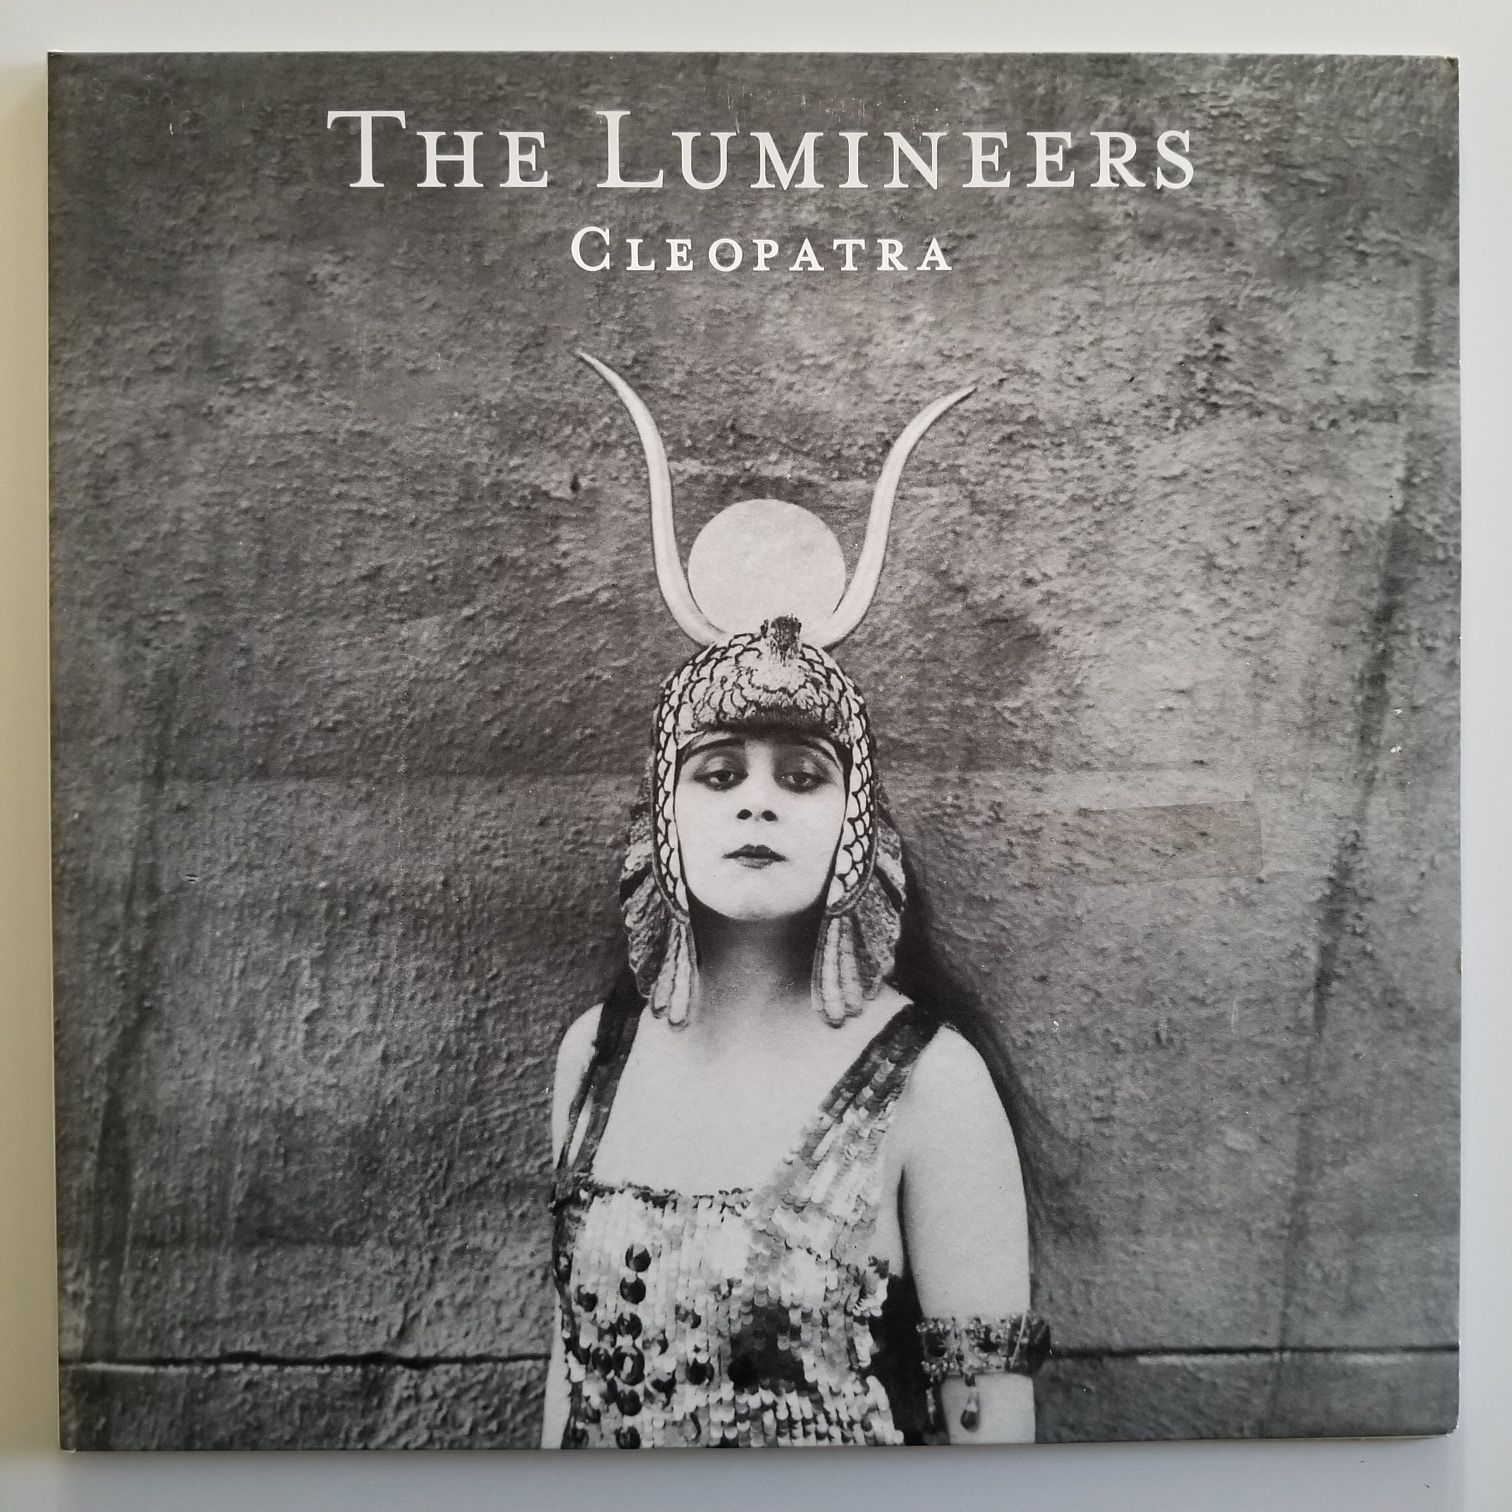 THE LUMINEERS Cleopatra vinyl record LP